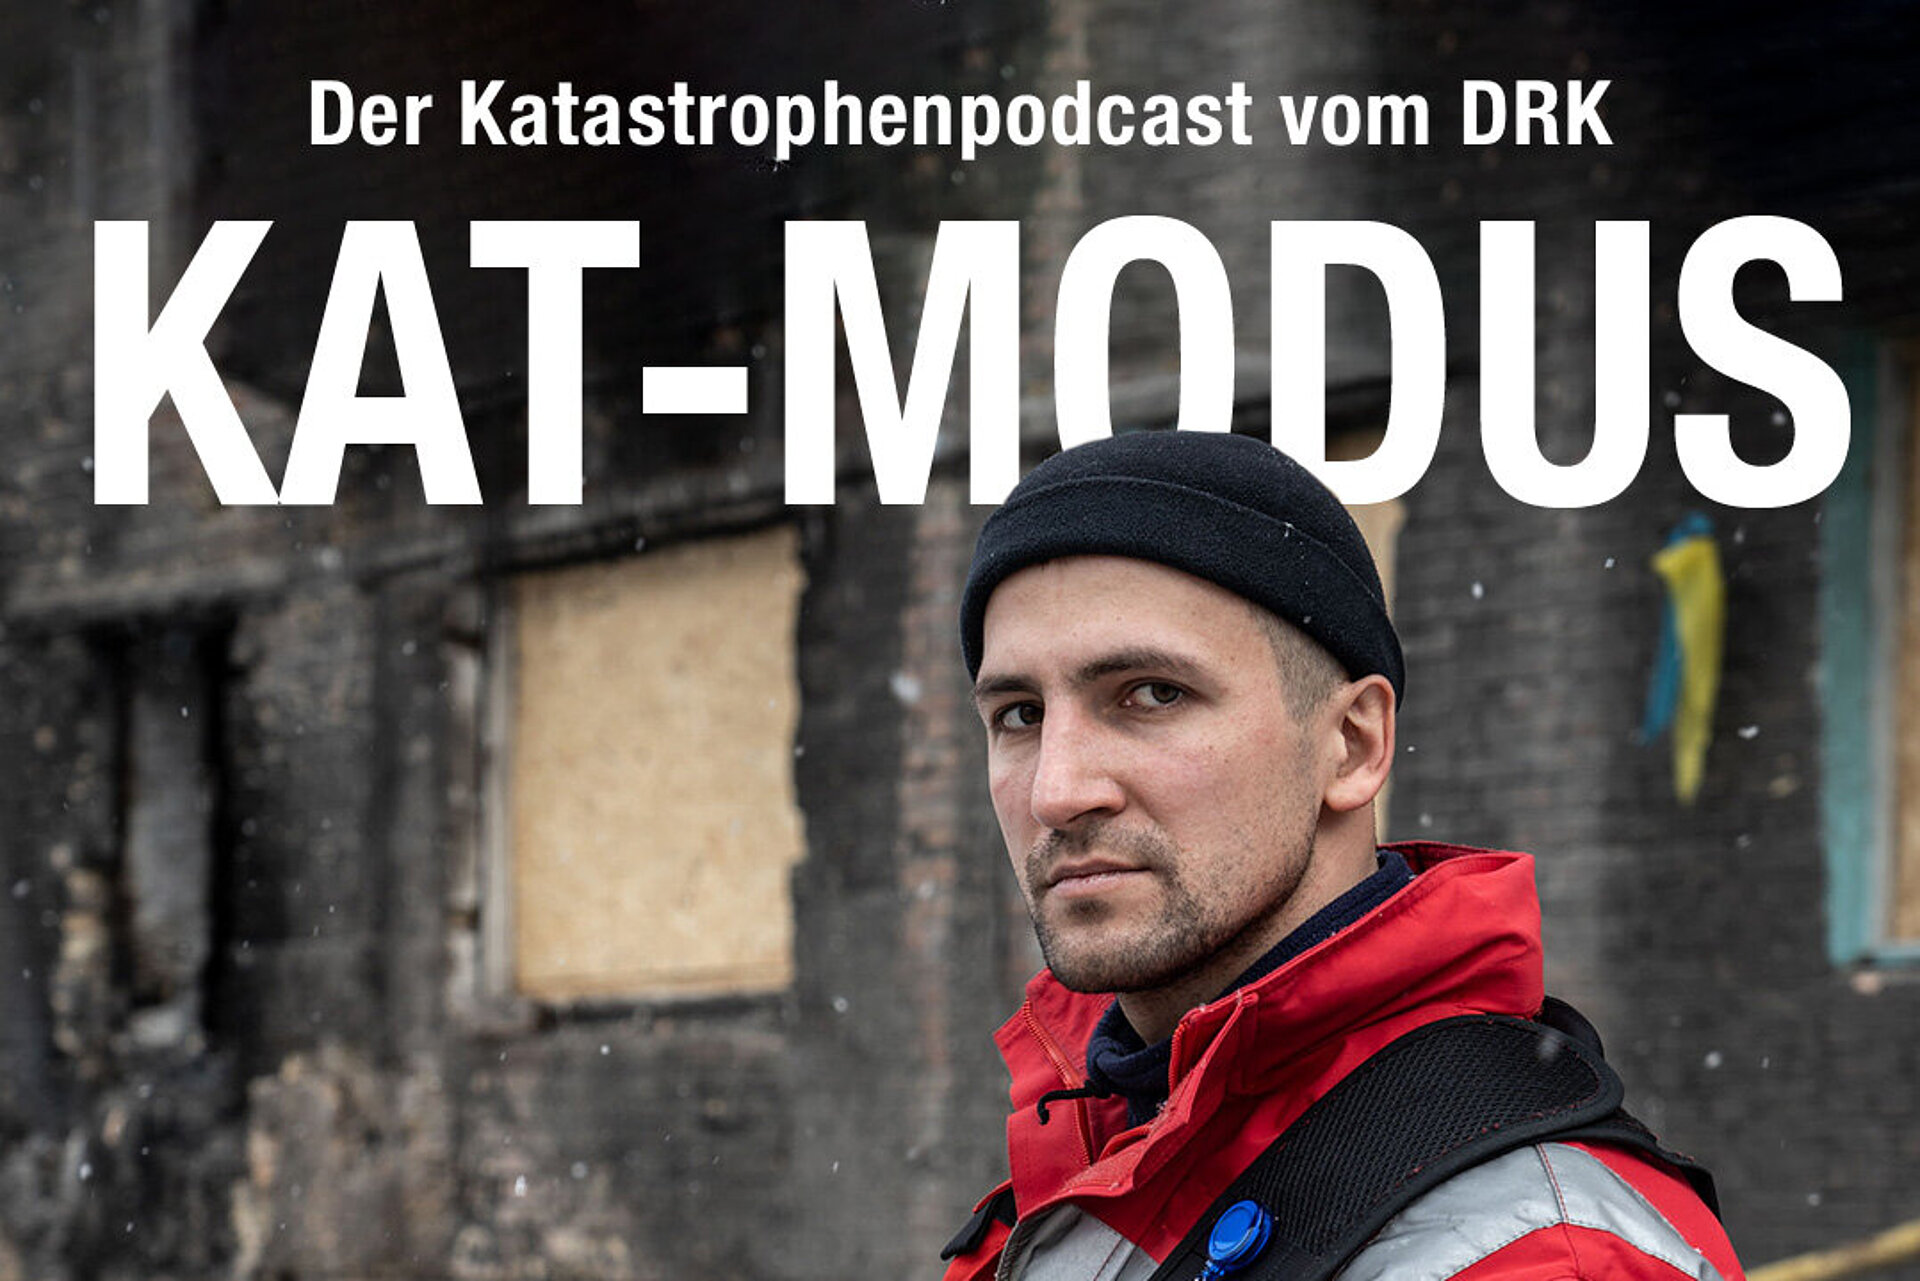 DRK Podcast KAT Modus Titelbild mit Rotkreuz-Mitarbeiter, welcher frontal in die Kamera schaut. Es steht in großer Schrift "Der Katastrophenpodcast vom DRK: KAT Modus" auf dem Bild.